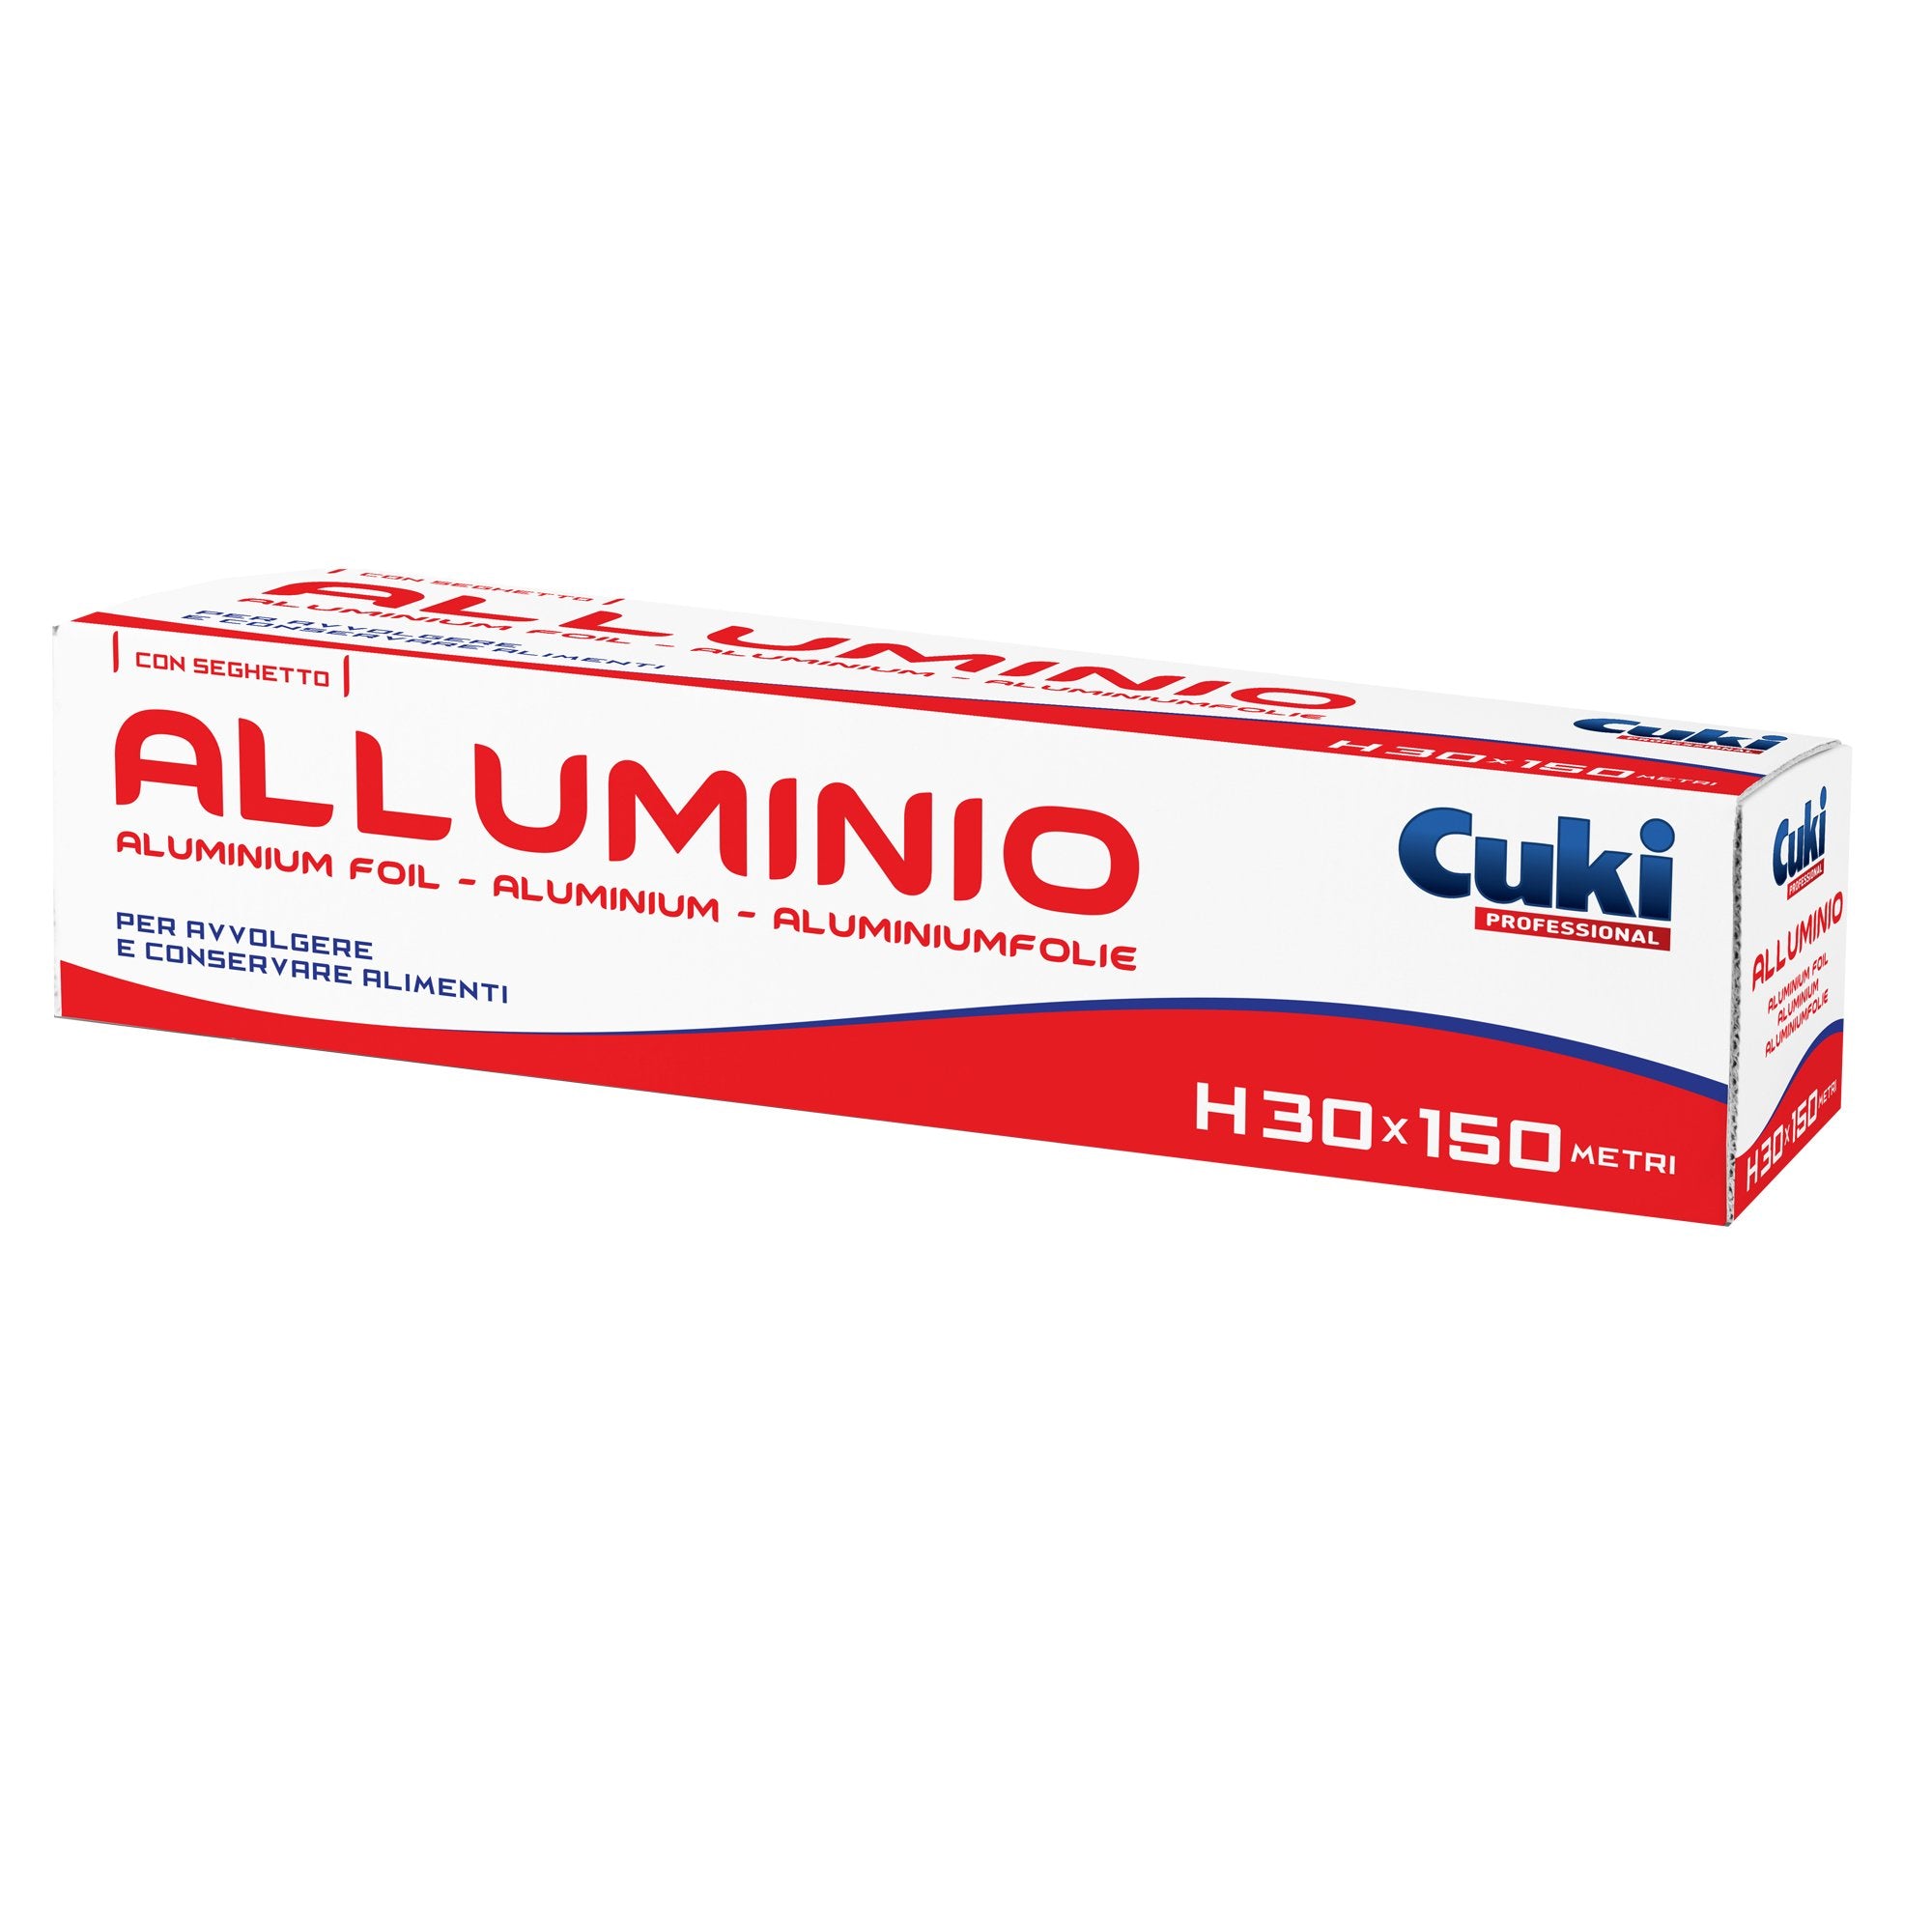 cuki-professional-roll-alluminio-h300mm-x-150mt-astuccio-seghetto